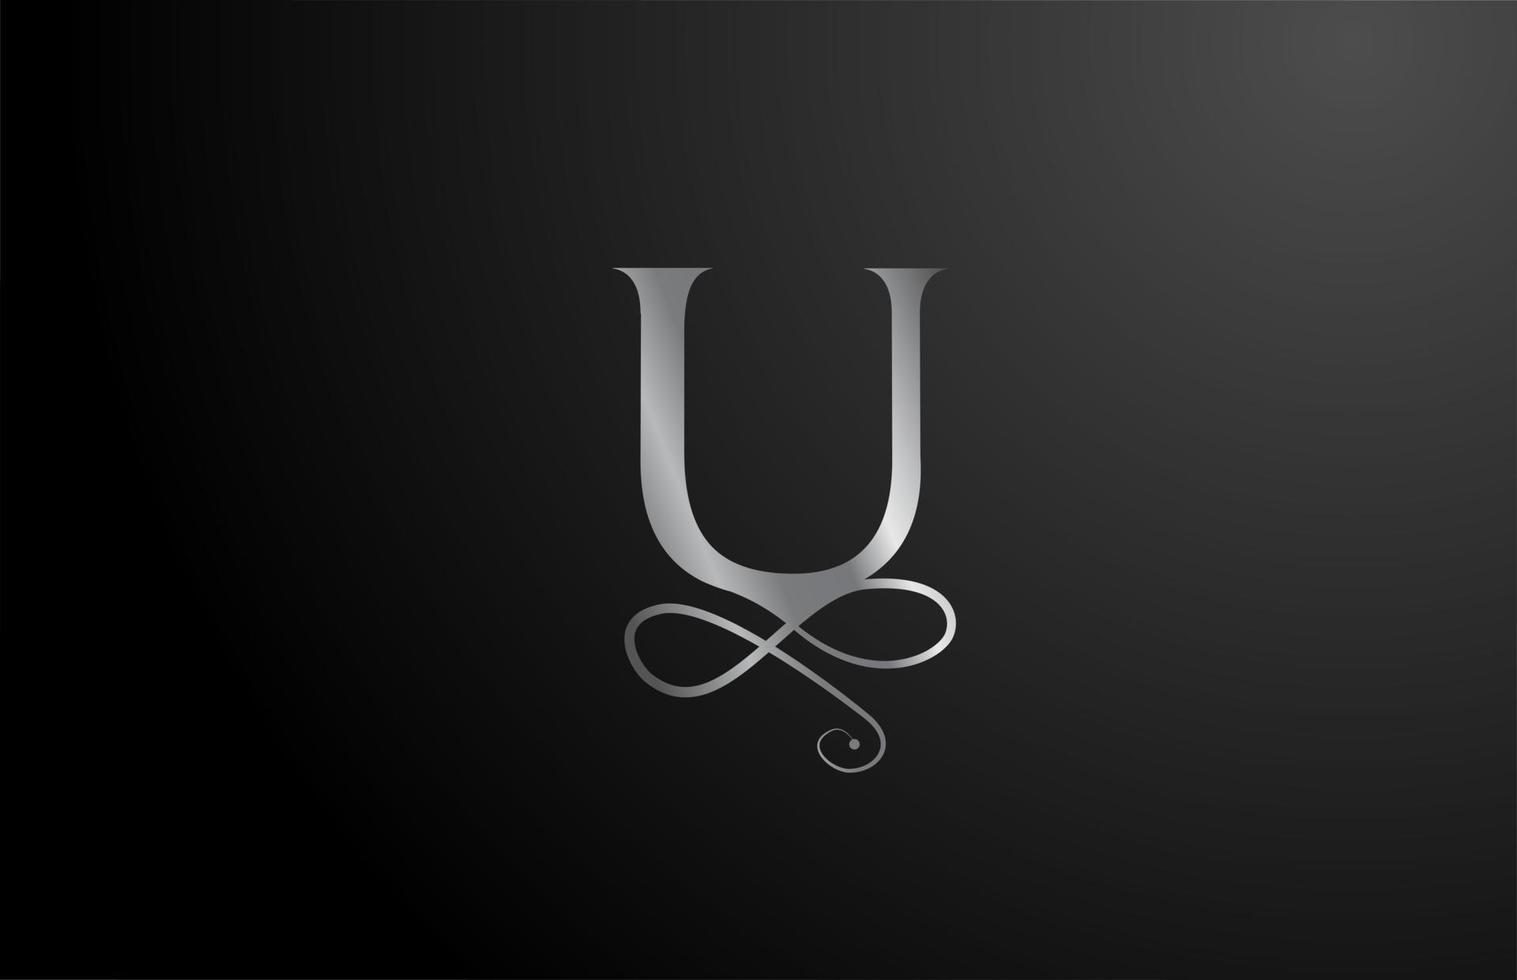 grijze u elegante monogram alfabet letter pictogram logo ontwerp. vintage bedrijfsbrading voor luxe producten en bedrijf vector